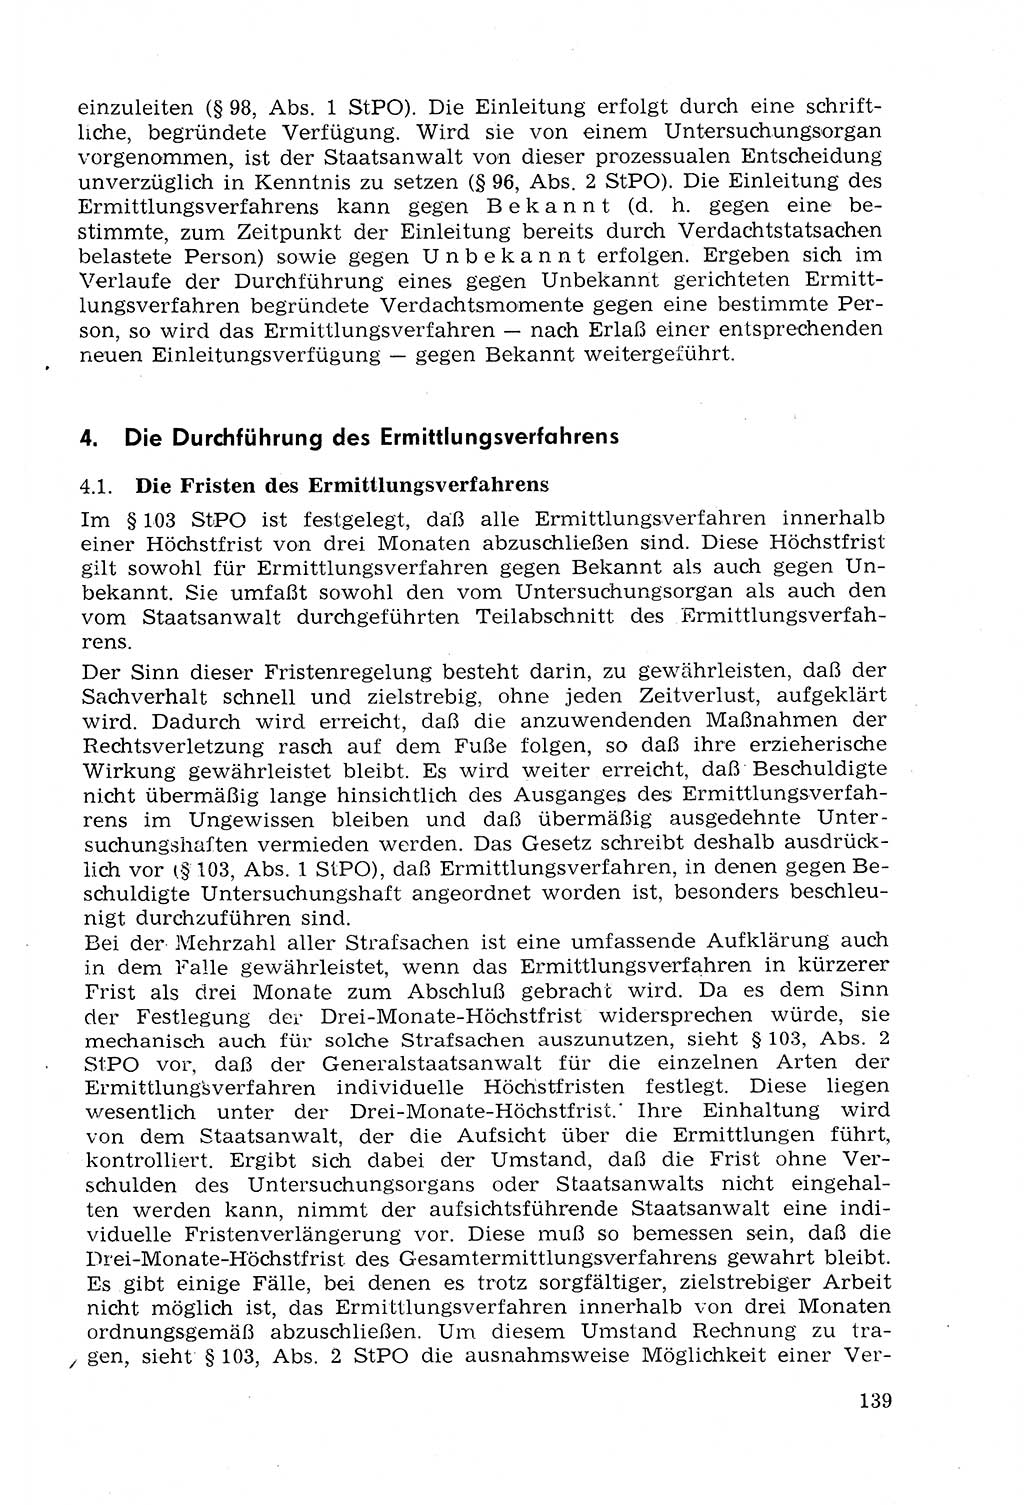 Strafprozeßrecht der DDR (Deutsche Demokratische Republik), Lehrmaterial 1969, Seite 139 (Strafprozeßr. DDR Lehrmat. 1969, S. 139)